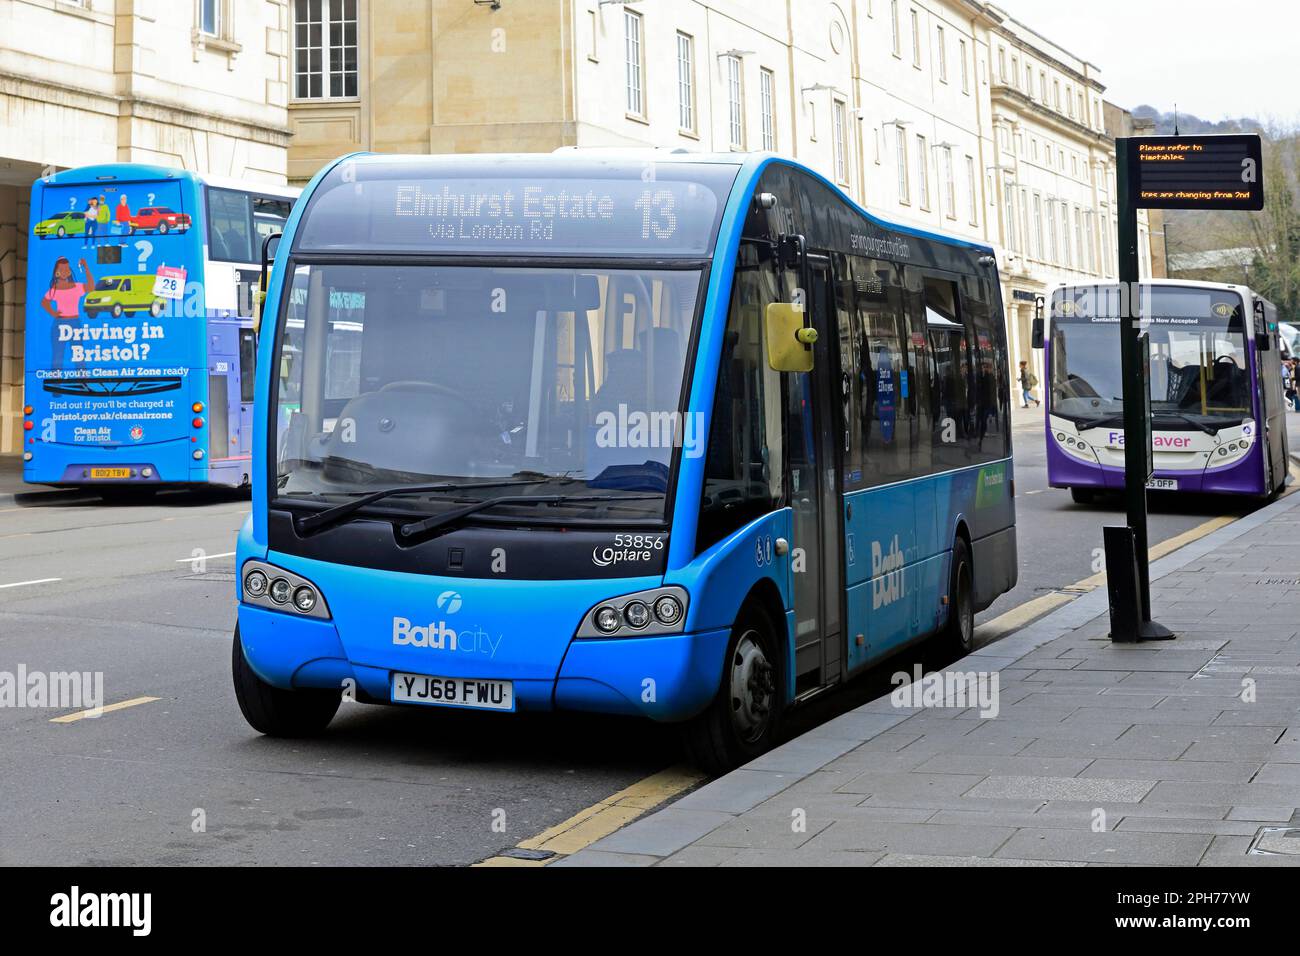 Autobus blu alla fermata dell'autobus, stazione degli autobus di Bath. N. 13. Elmhurst Estate. Foto Stock